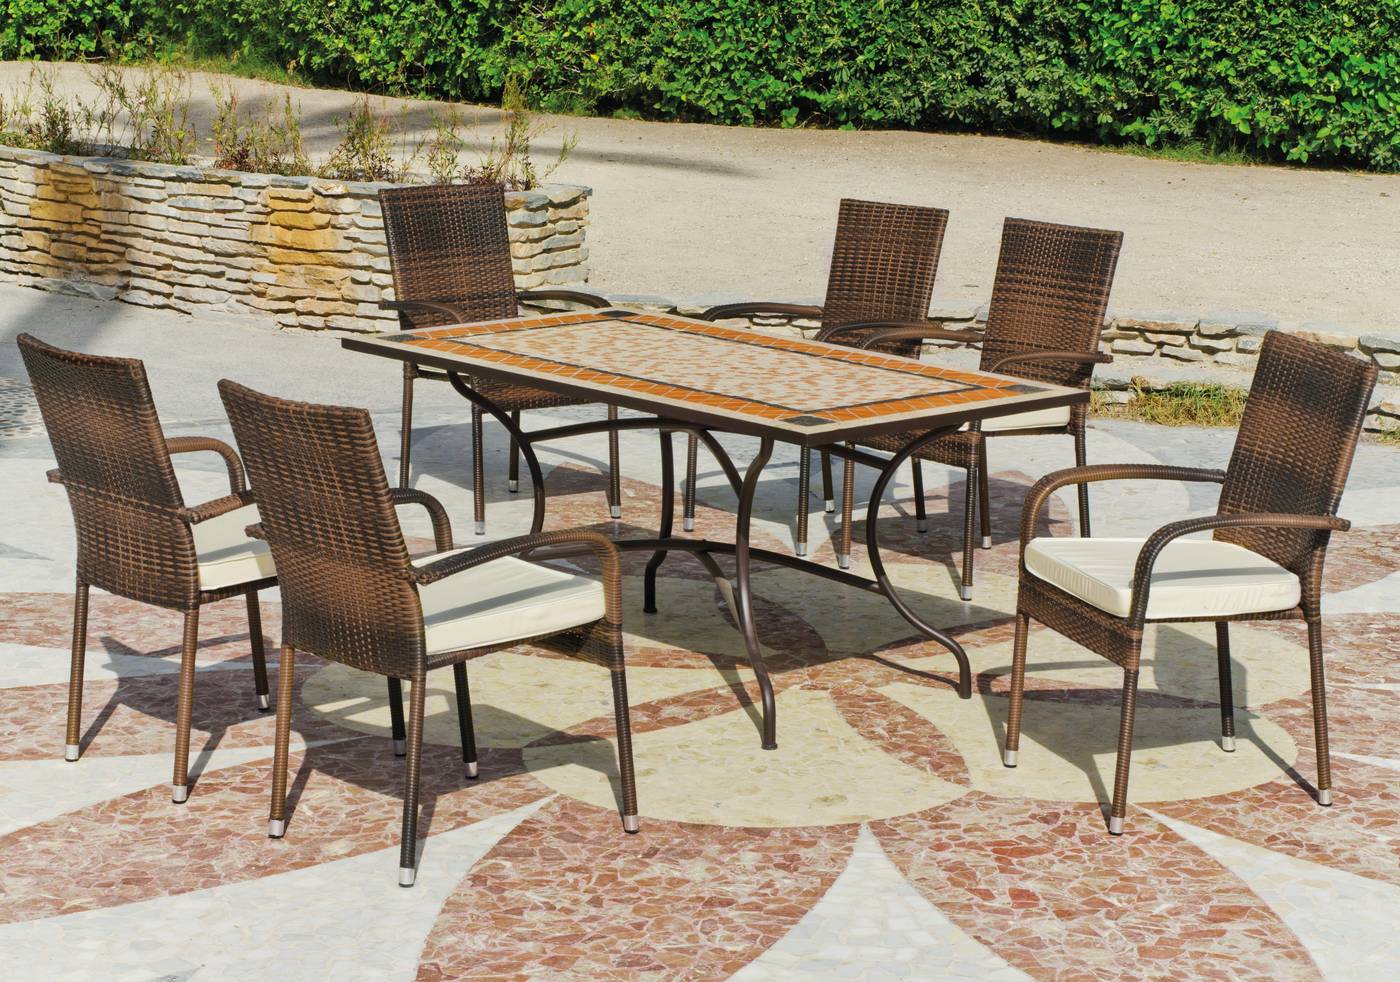 Conjunto para terraza o jardín de forja color bronce: 1 mesa con tablero mosaico + 6 sillones de ratán sintético + 6 cojines.